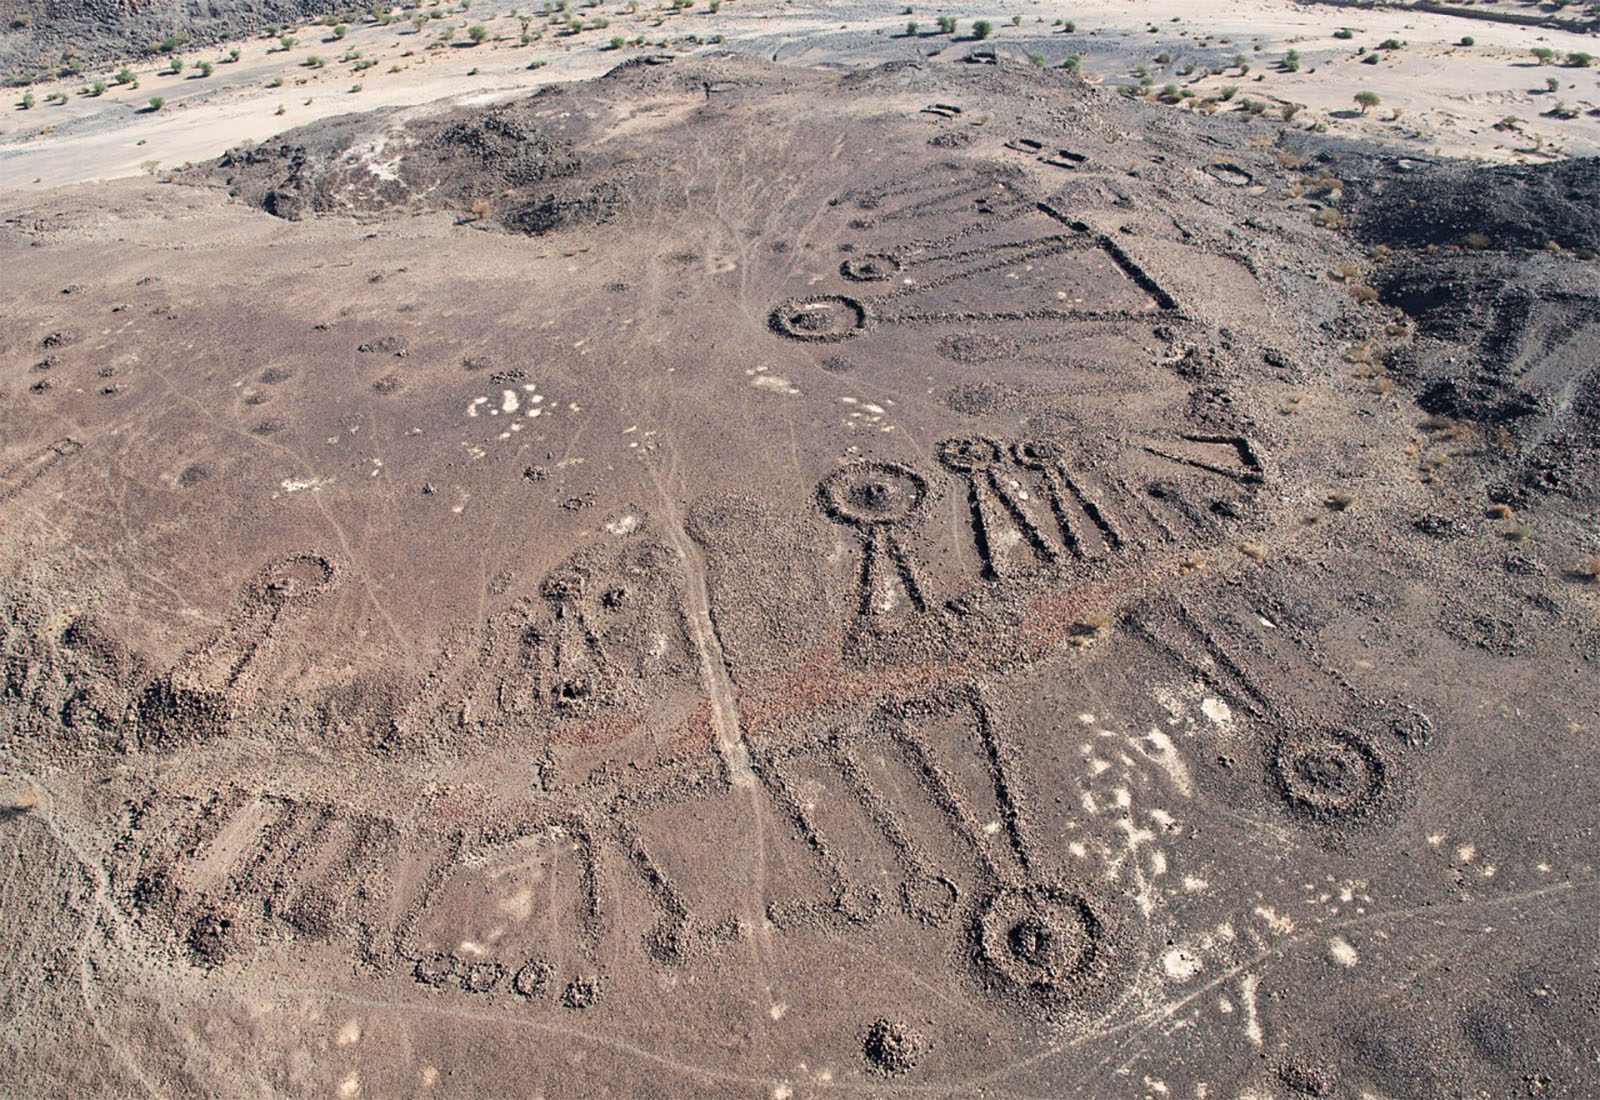 مقابر قديمة تكشف أسرار شبكة طرق عمرها 4500 عام في شبه الجزيرة العربية